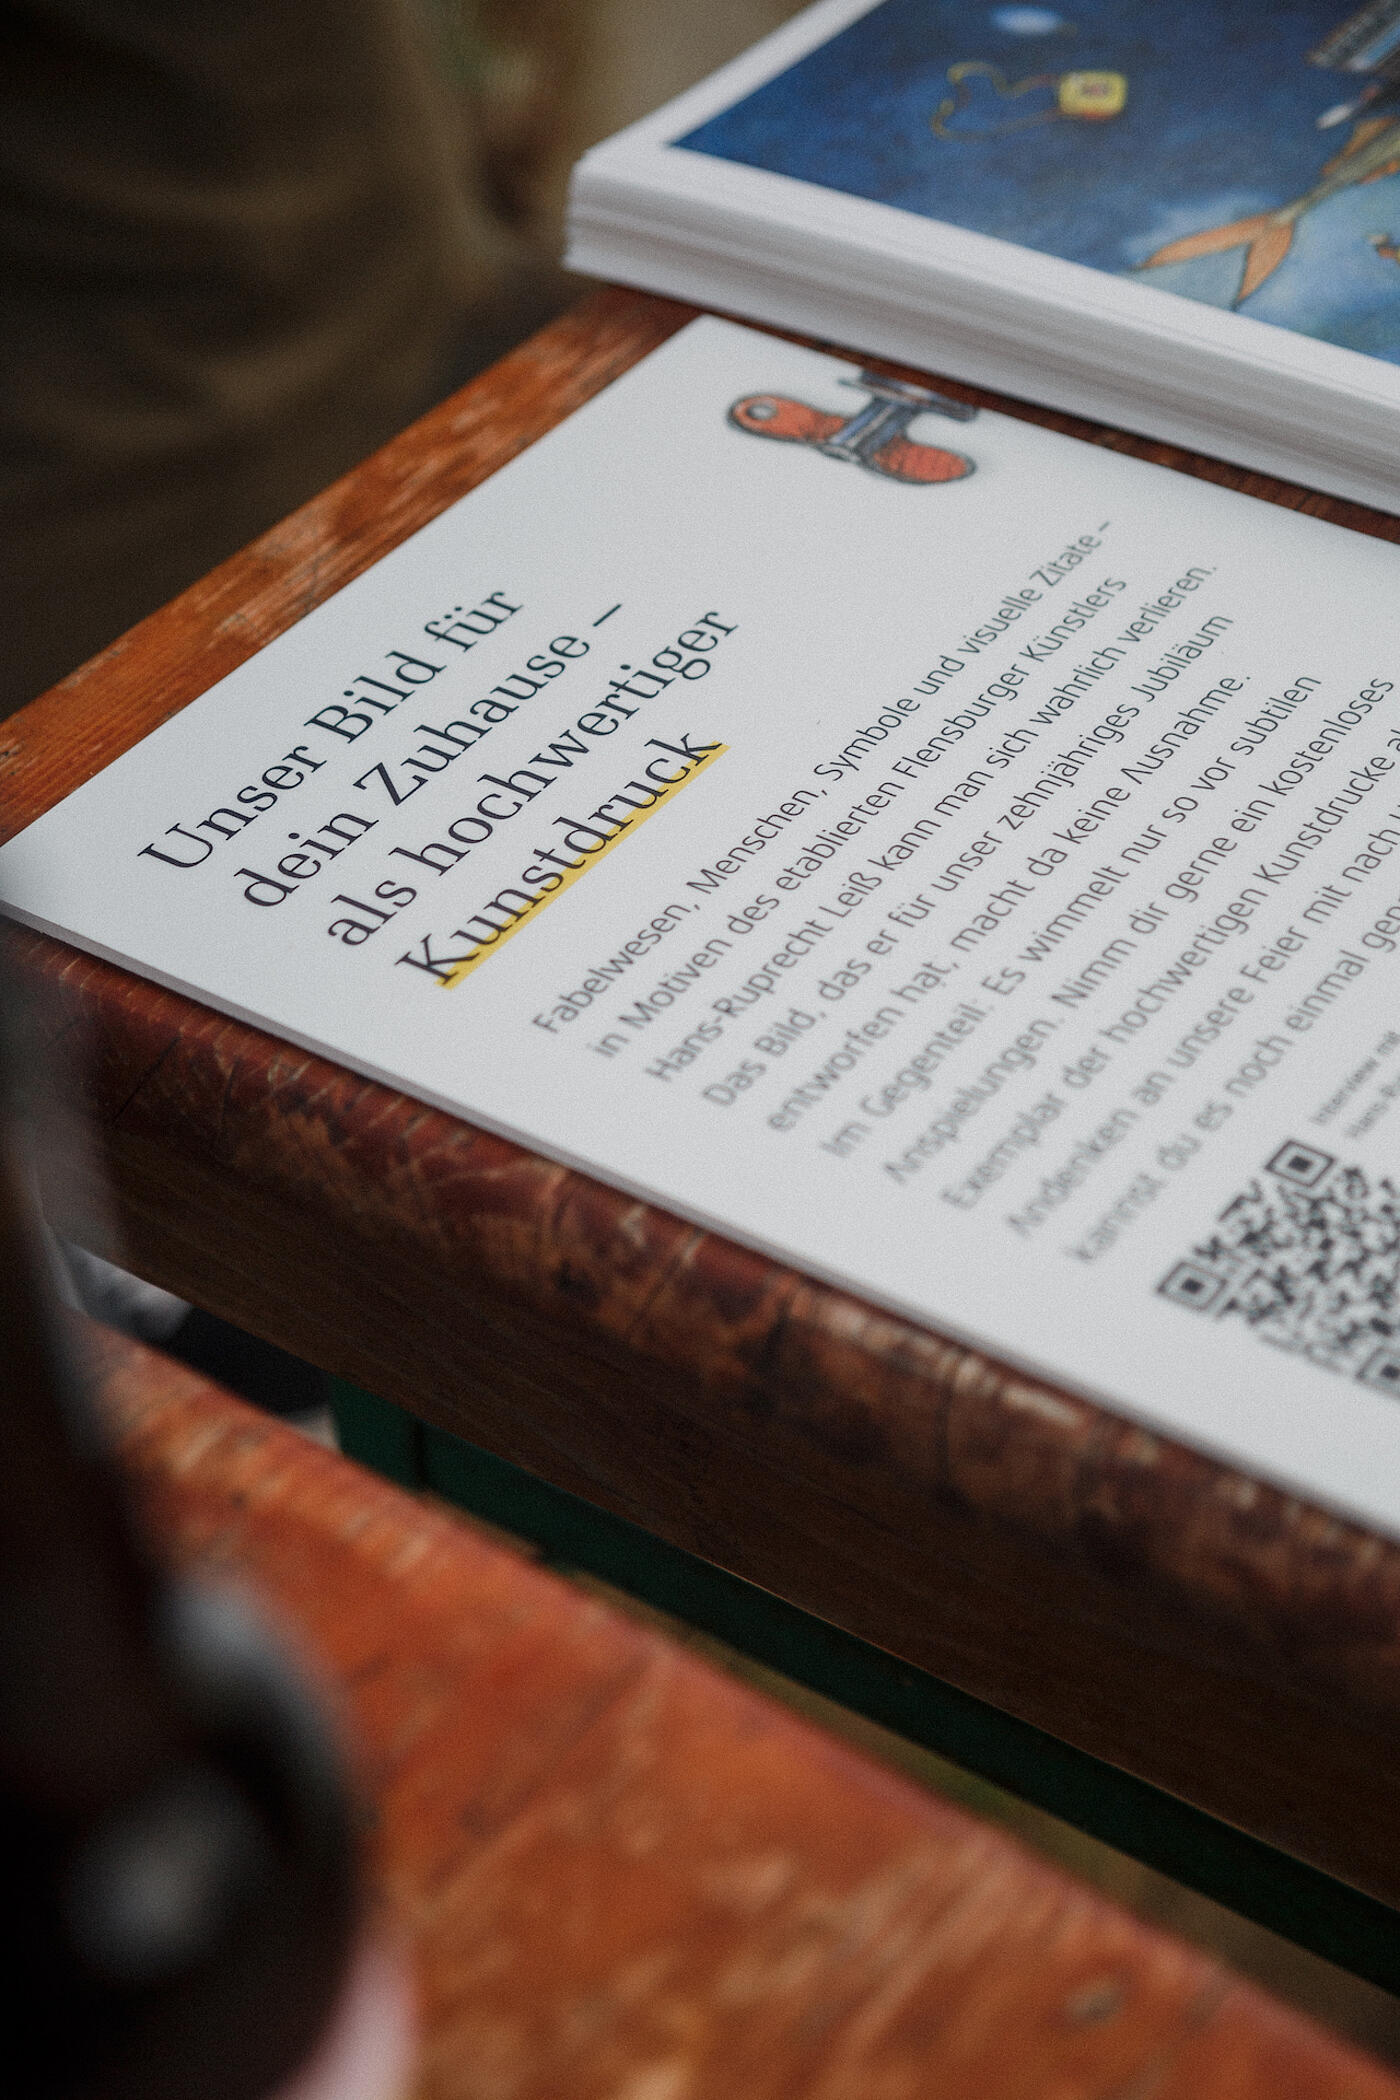 Der Bildausschnitt zeigt eine Informationskarte, auf der Besucher*innen des Jubiläumsfests lesen können, dass sie sich Kunstdrucke des norddeutschen Künstlers Leiß kostenlos mitnehmen dürfen.